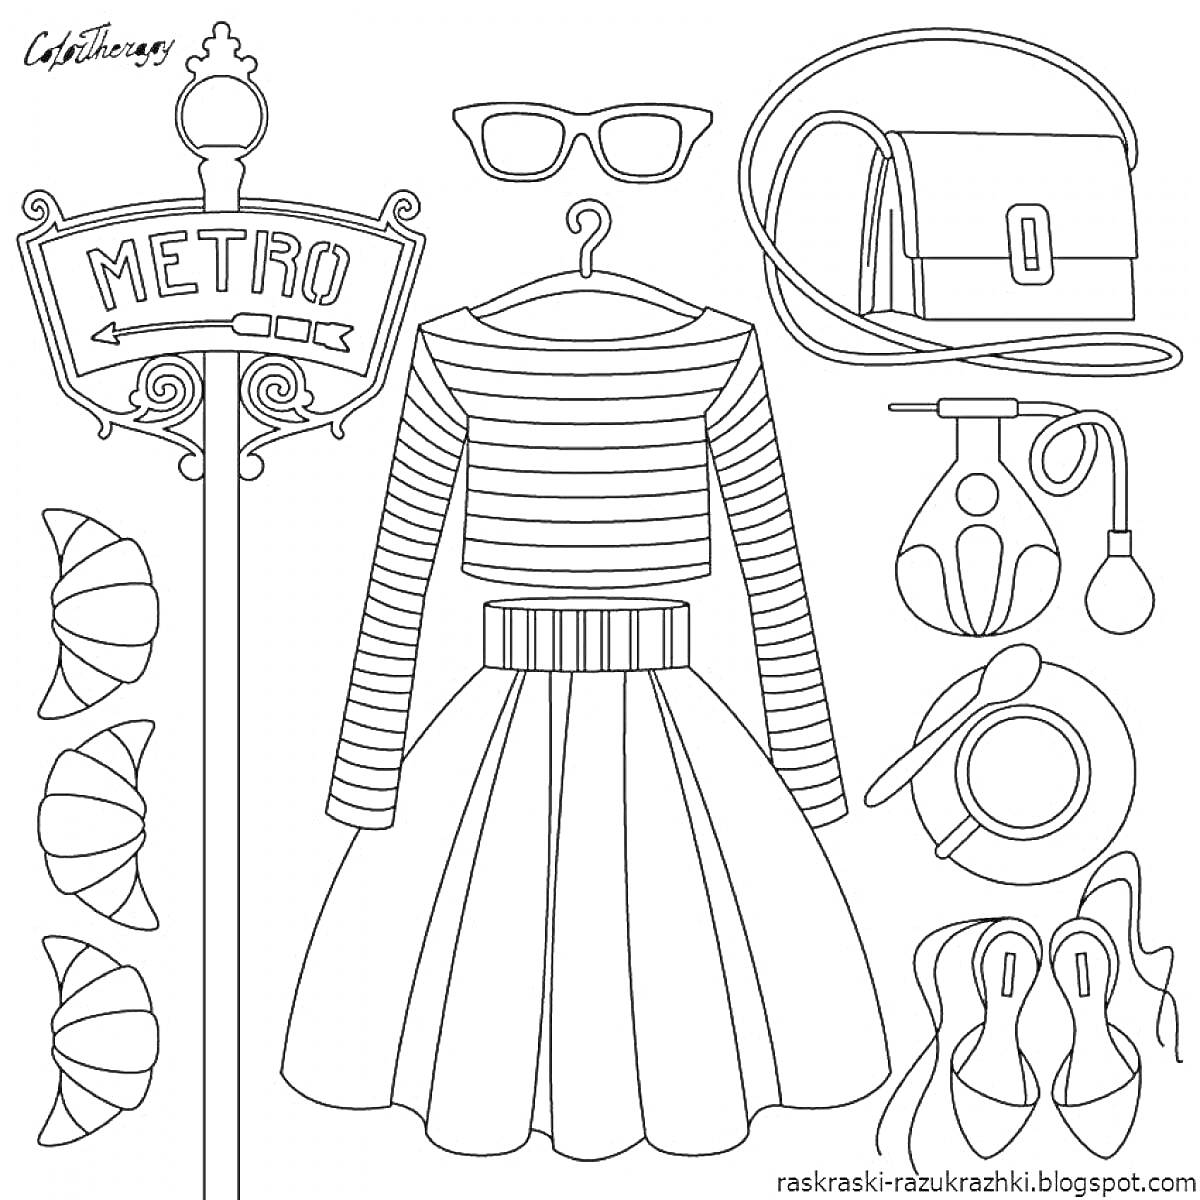 Раскраска Метро, очки, сумка, кулон, кофточка в полоску, юбка в складку, духи, блинное украшение, пояс, туфли на каблуке